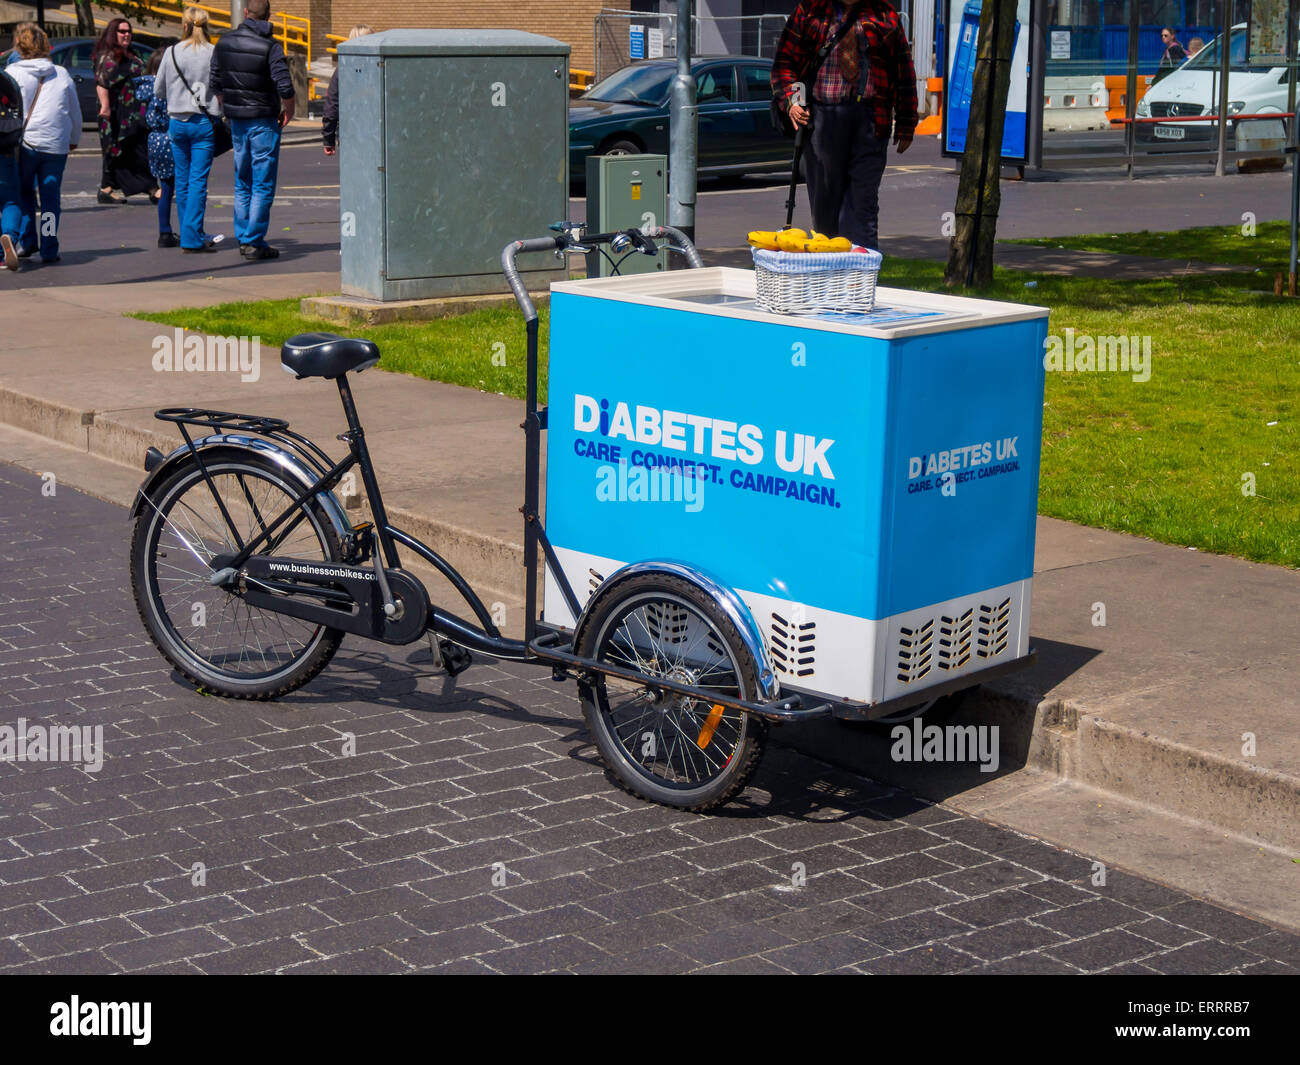 Un vintage ice cream tricycle du vendeur utilisé par la charité Diabetes UK pour distribuer gratuitement des bananes, des fruits sains à faible teneur en sucre Banque D'Images